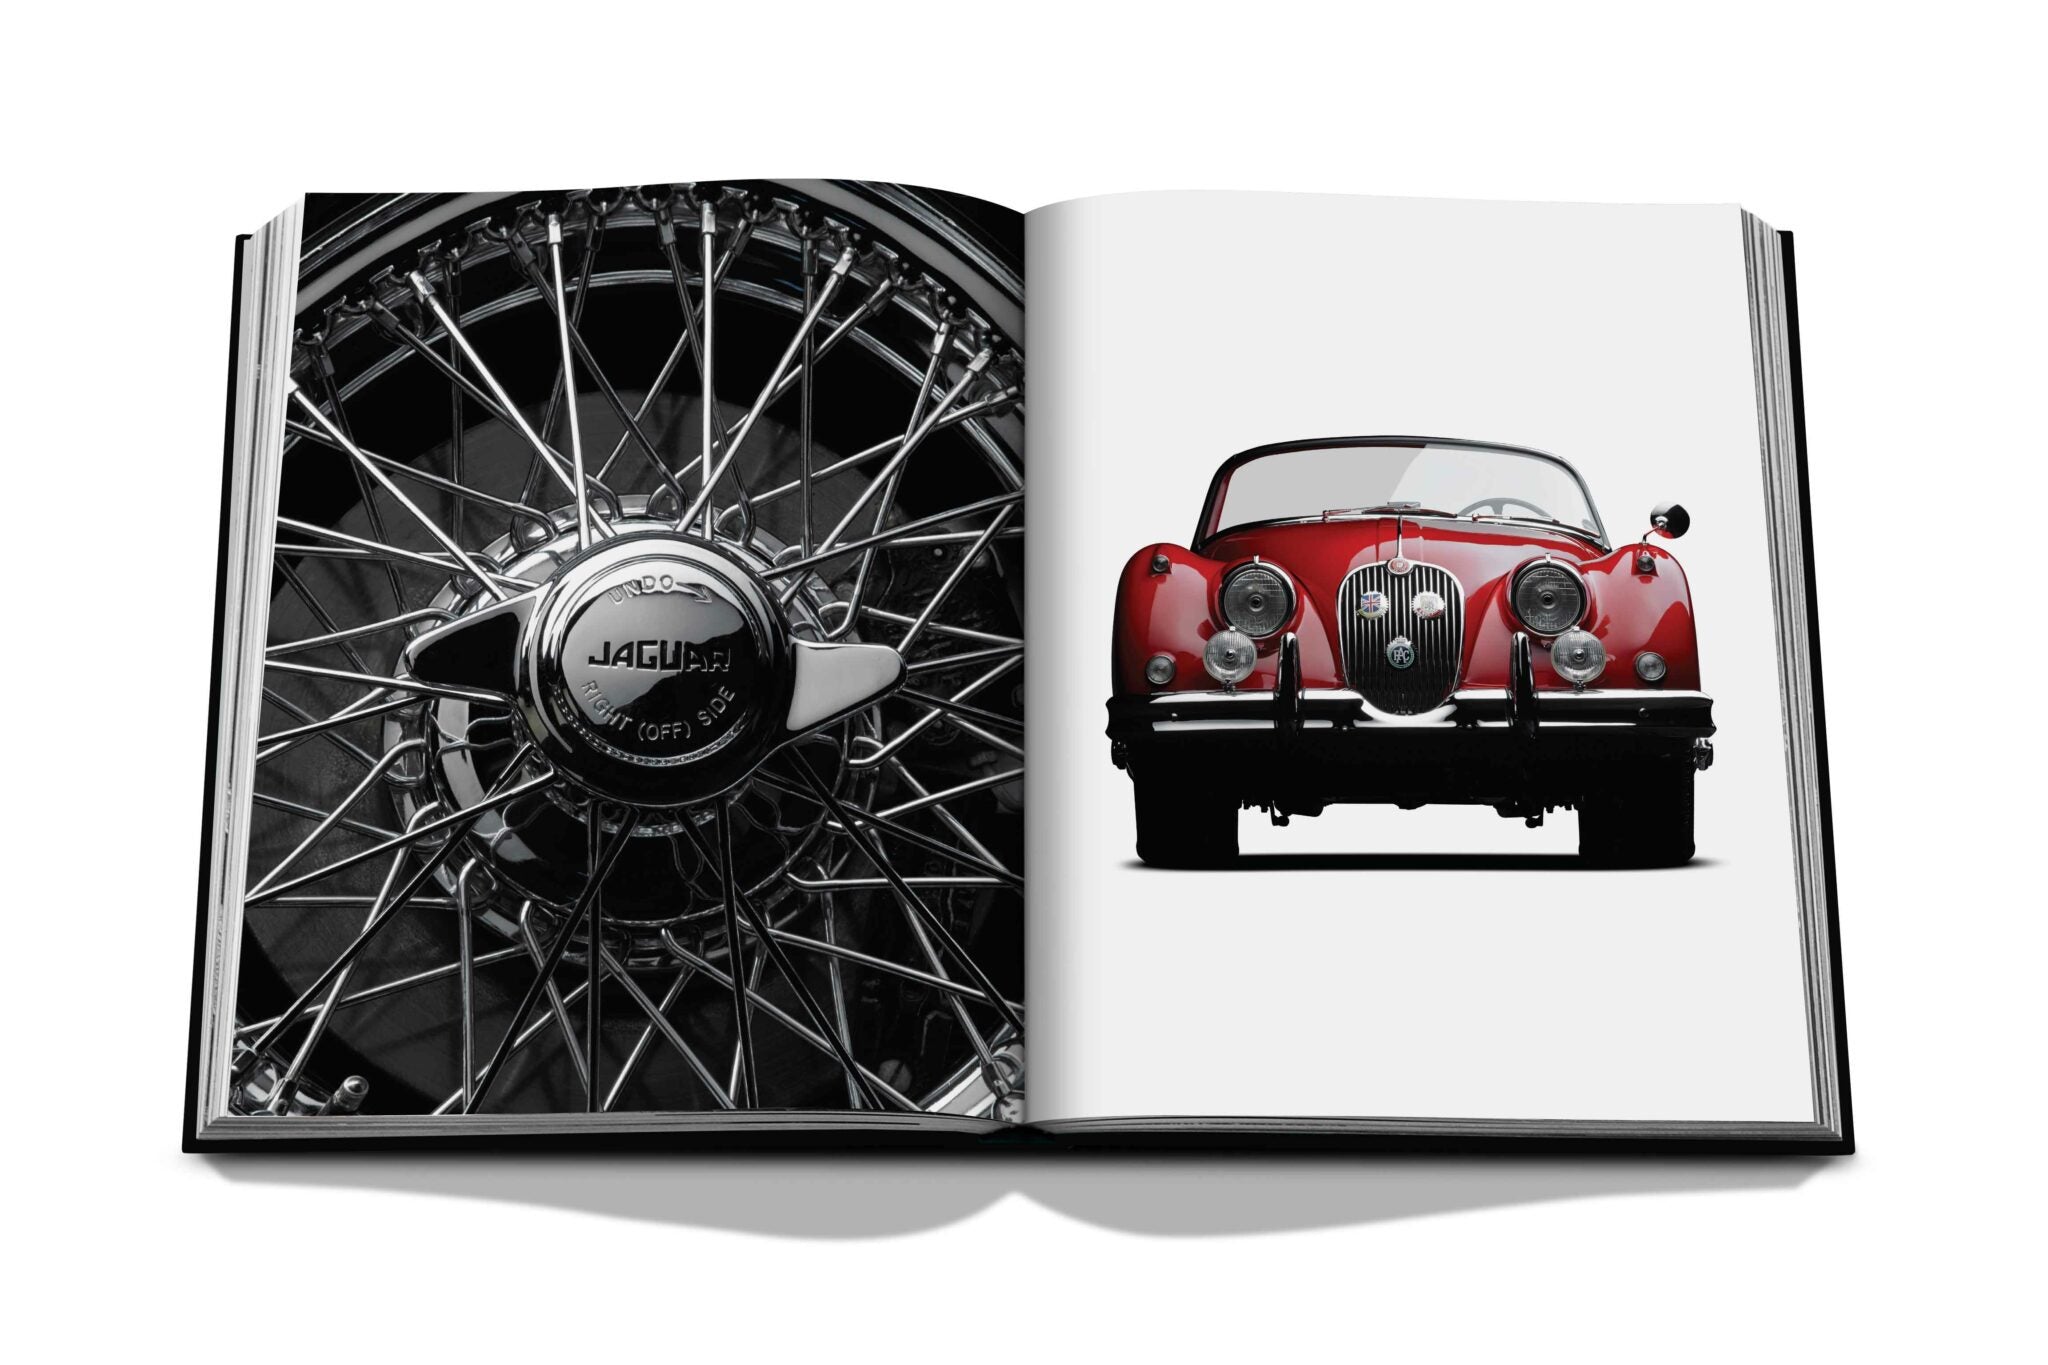 Assouline ikonisk: konst, design, reklam och bilen